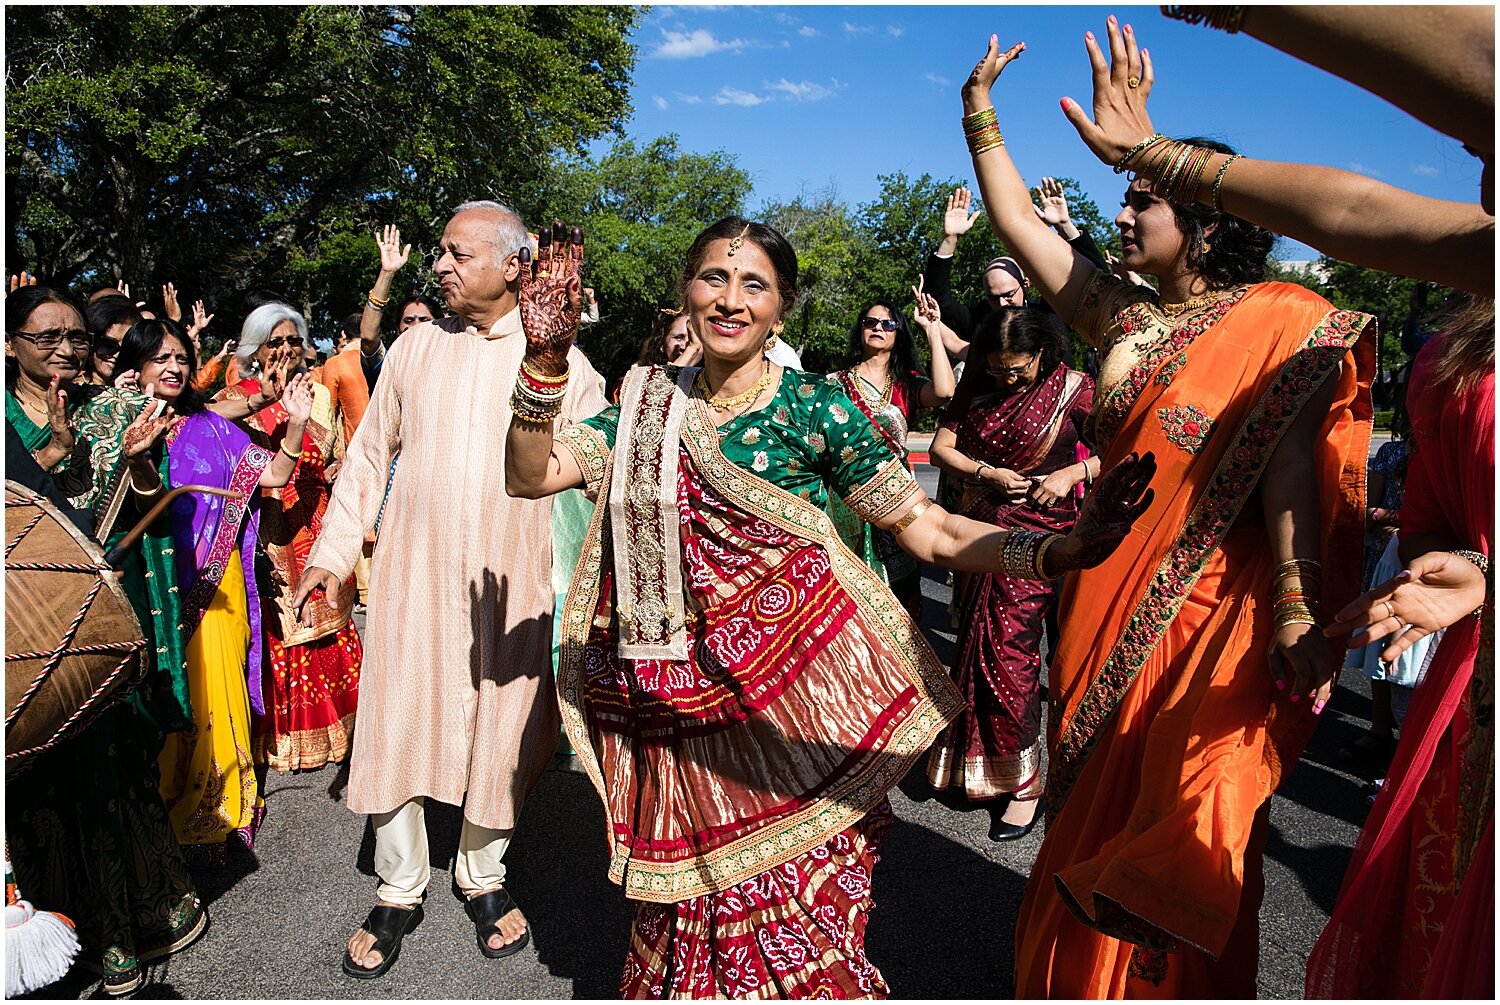  Indian wedding celebration 